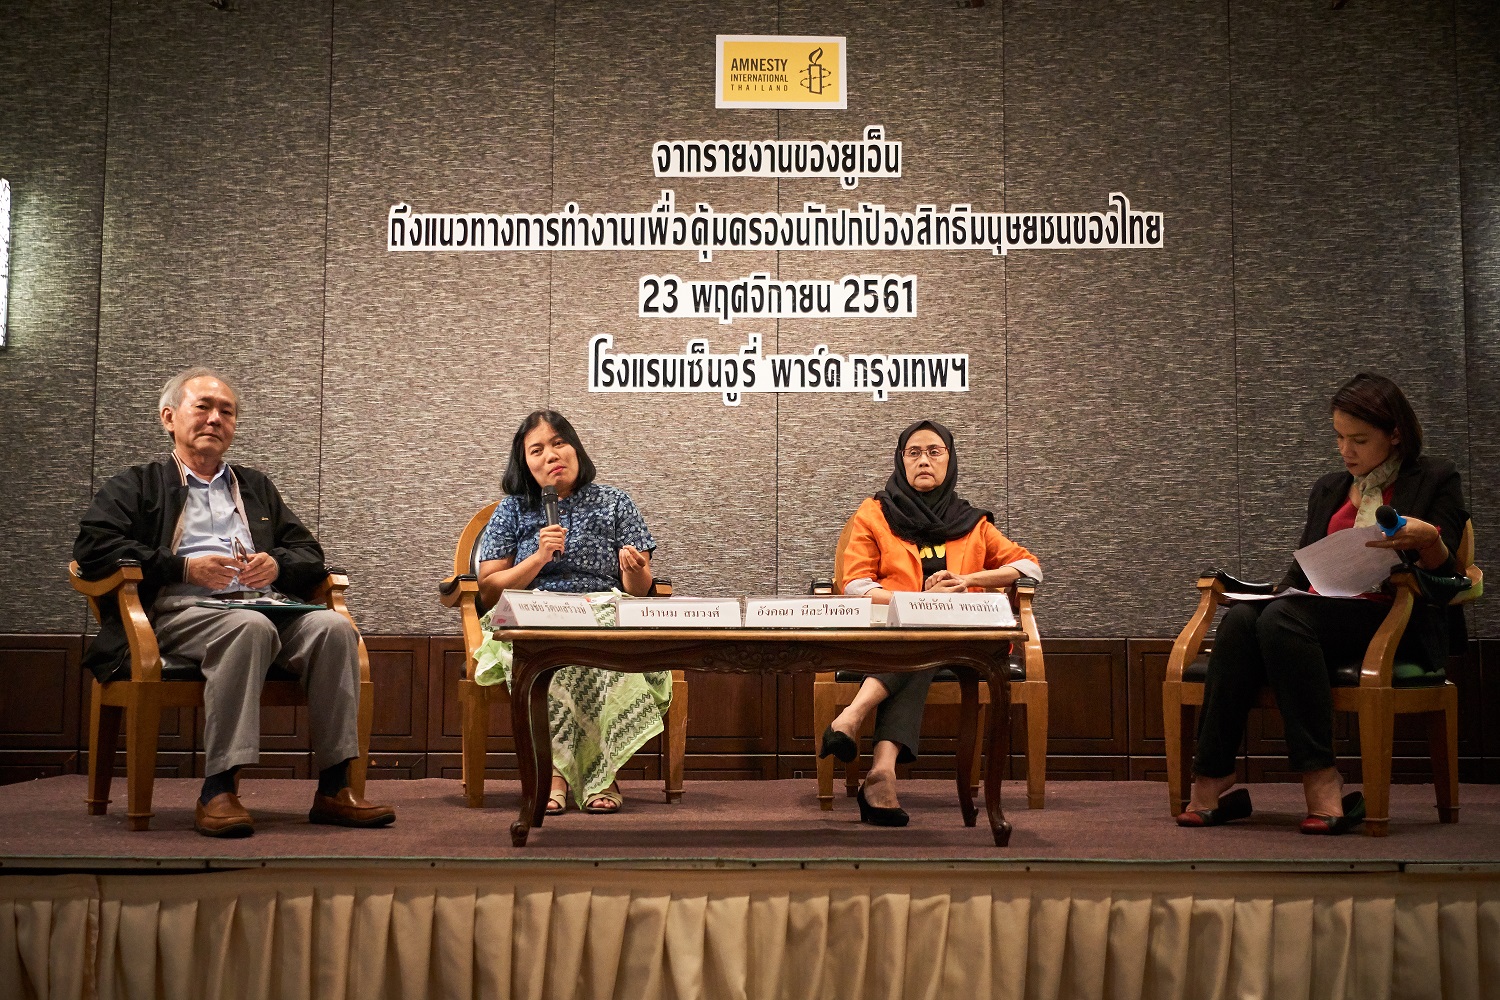 20 ปี ปฏิญญานักปกป้องสิทธิมนุษยชน ความคุ้มครองที่ยังไม่เกิดในไทย